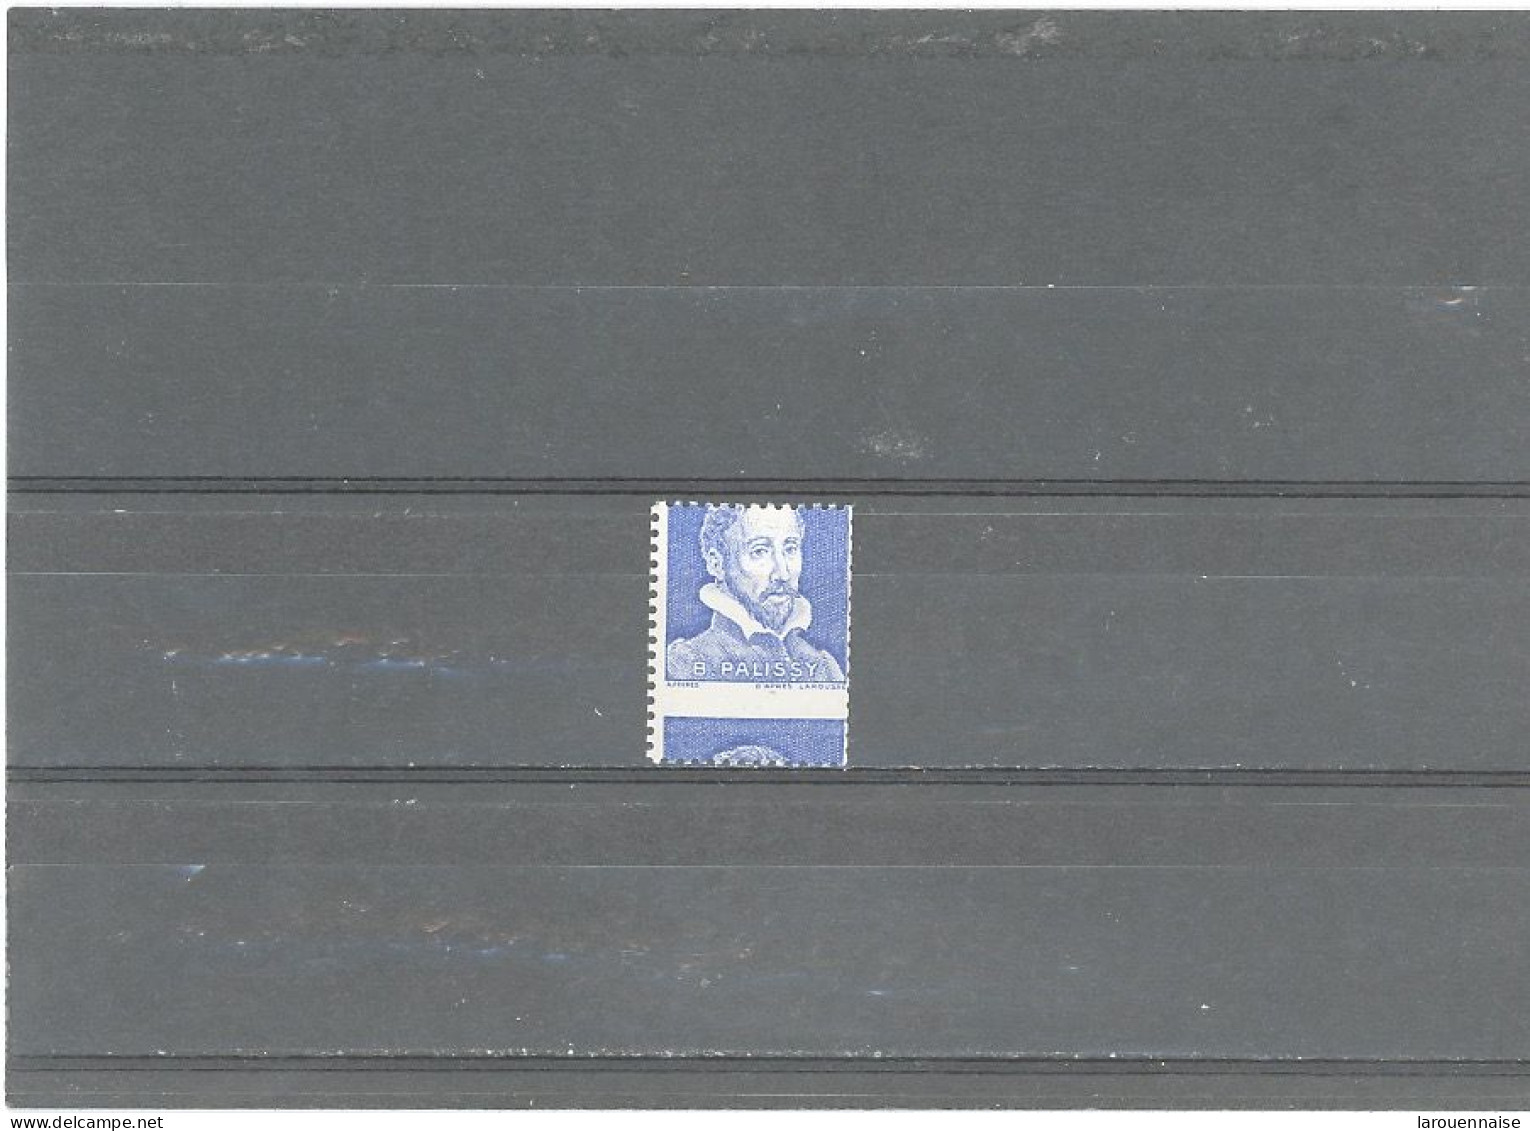 VARIÉTÉS -Pa 8 E - PALISSY -VIGNETTE EXPERIMENTALE  -ISSU DE ROULETTE PIQUAGE A CHEVAL - Unused Stamps